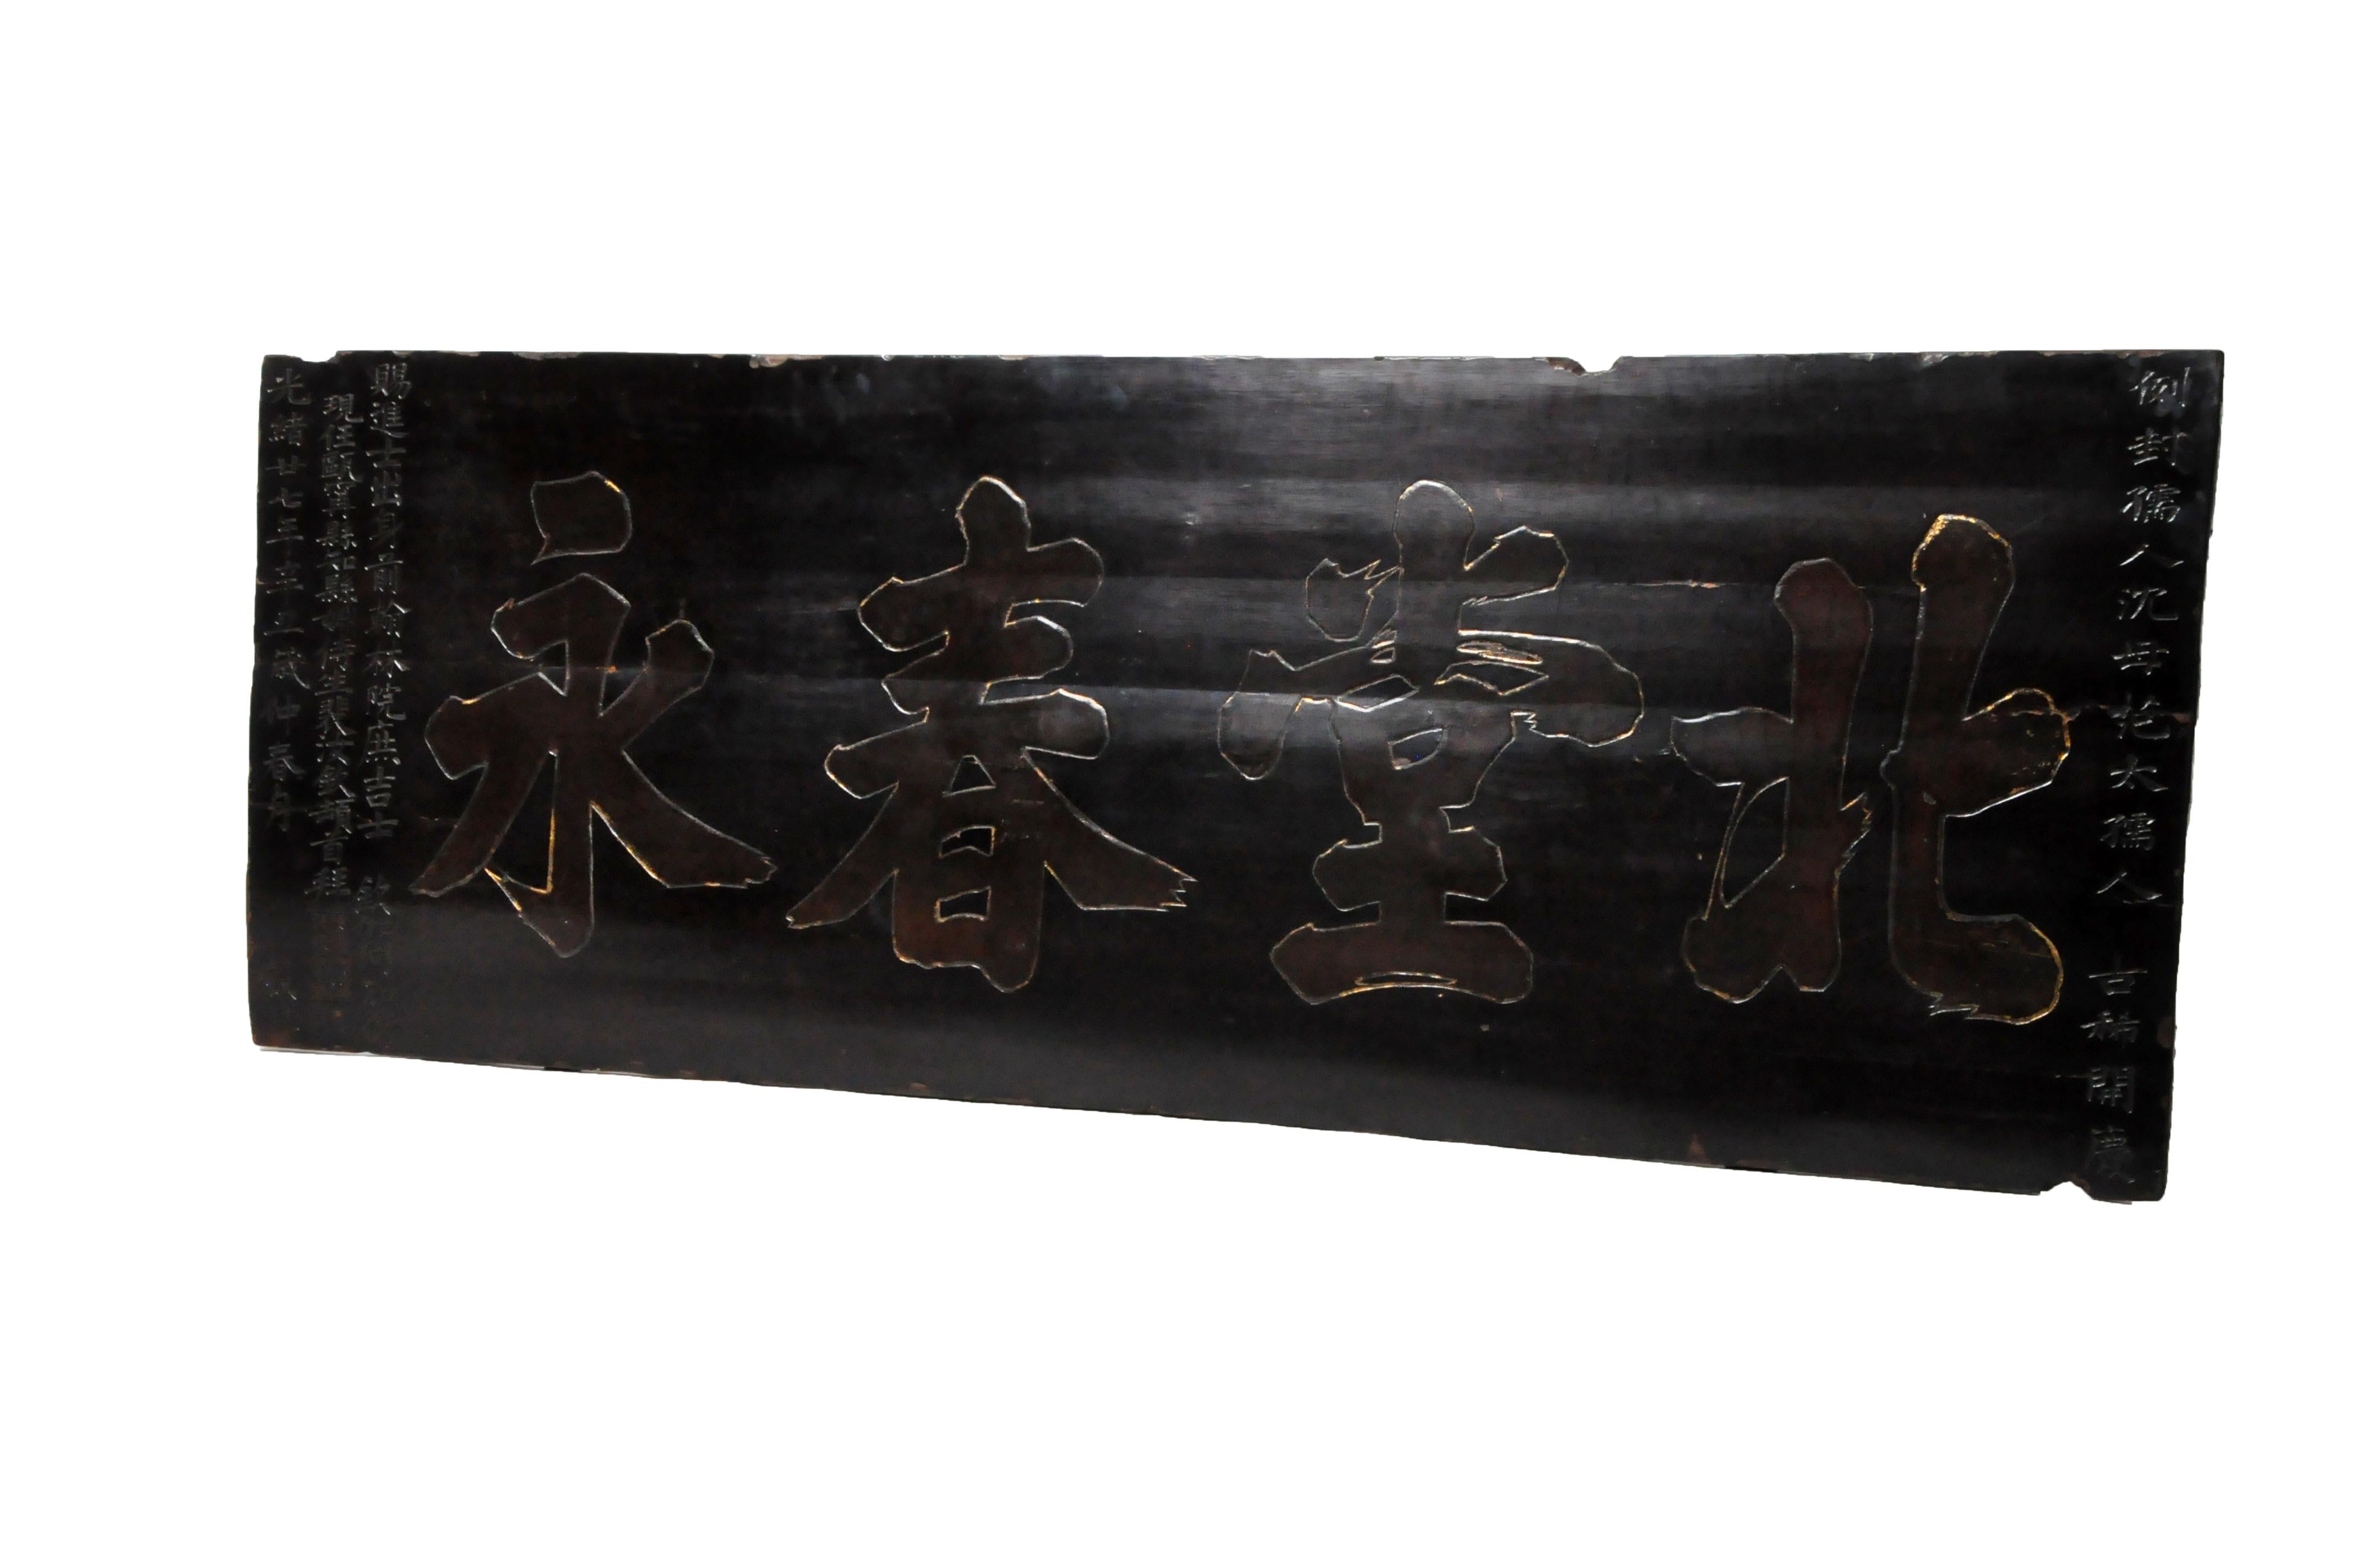 Dieses eindrucksvolle Schild hing einst über dem Eingang zu einer chinesischen Ahnenhalle. Es ist aus Ulmenholzbrettern gefertigt, die zum Schutz vor den Elementen mit einer dicken Schicht schwarzen Baumlacks überzogen sind. Die Schriftzeichen